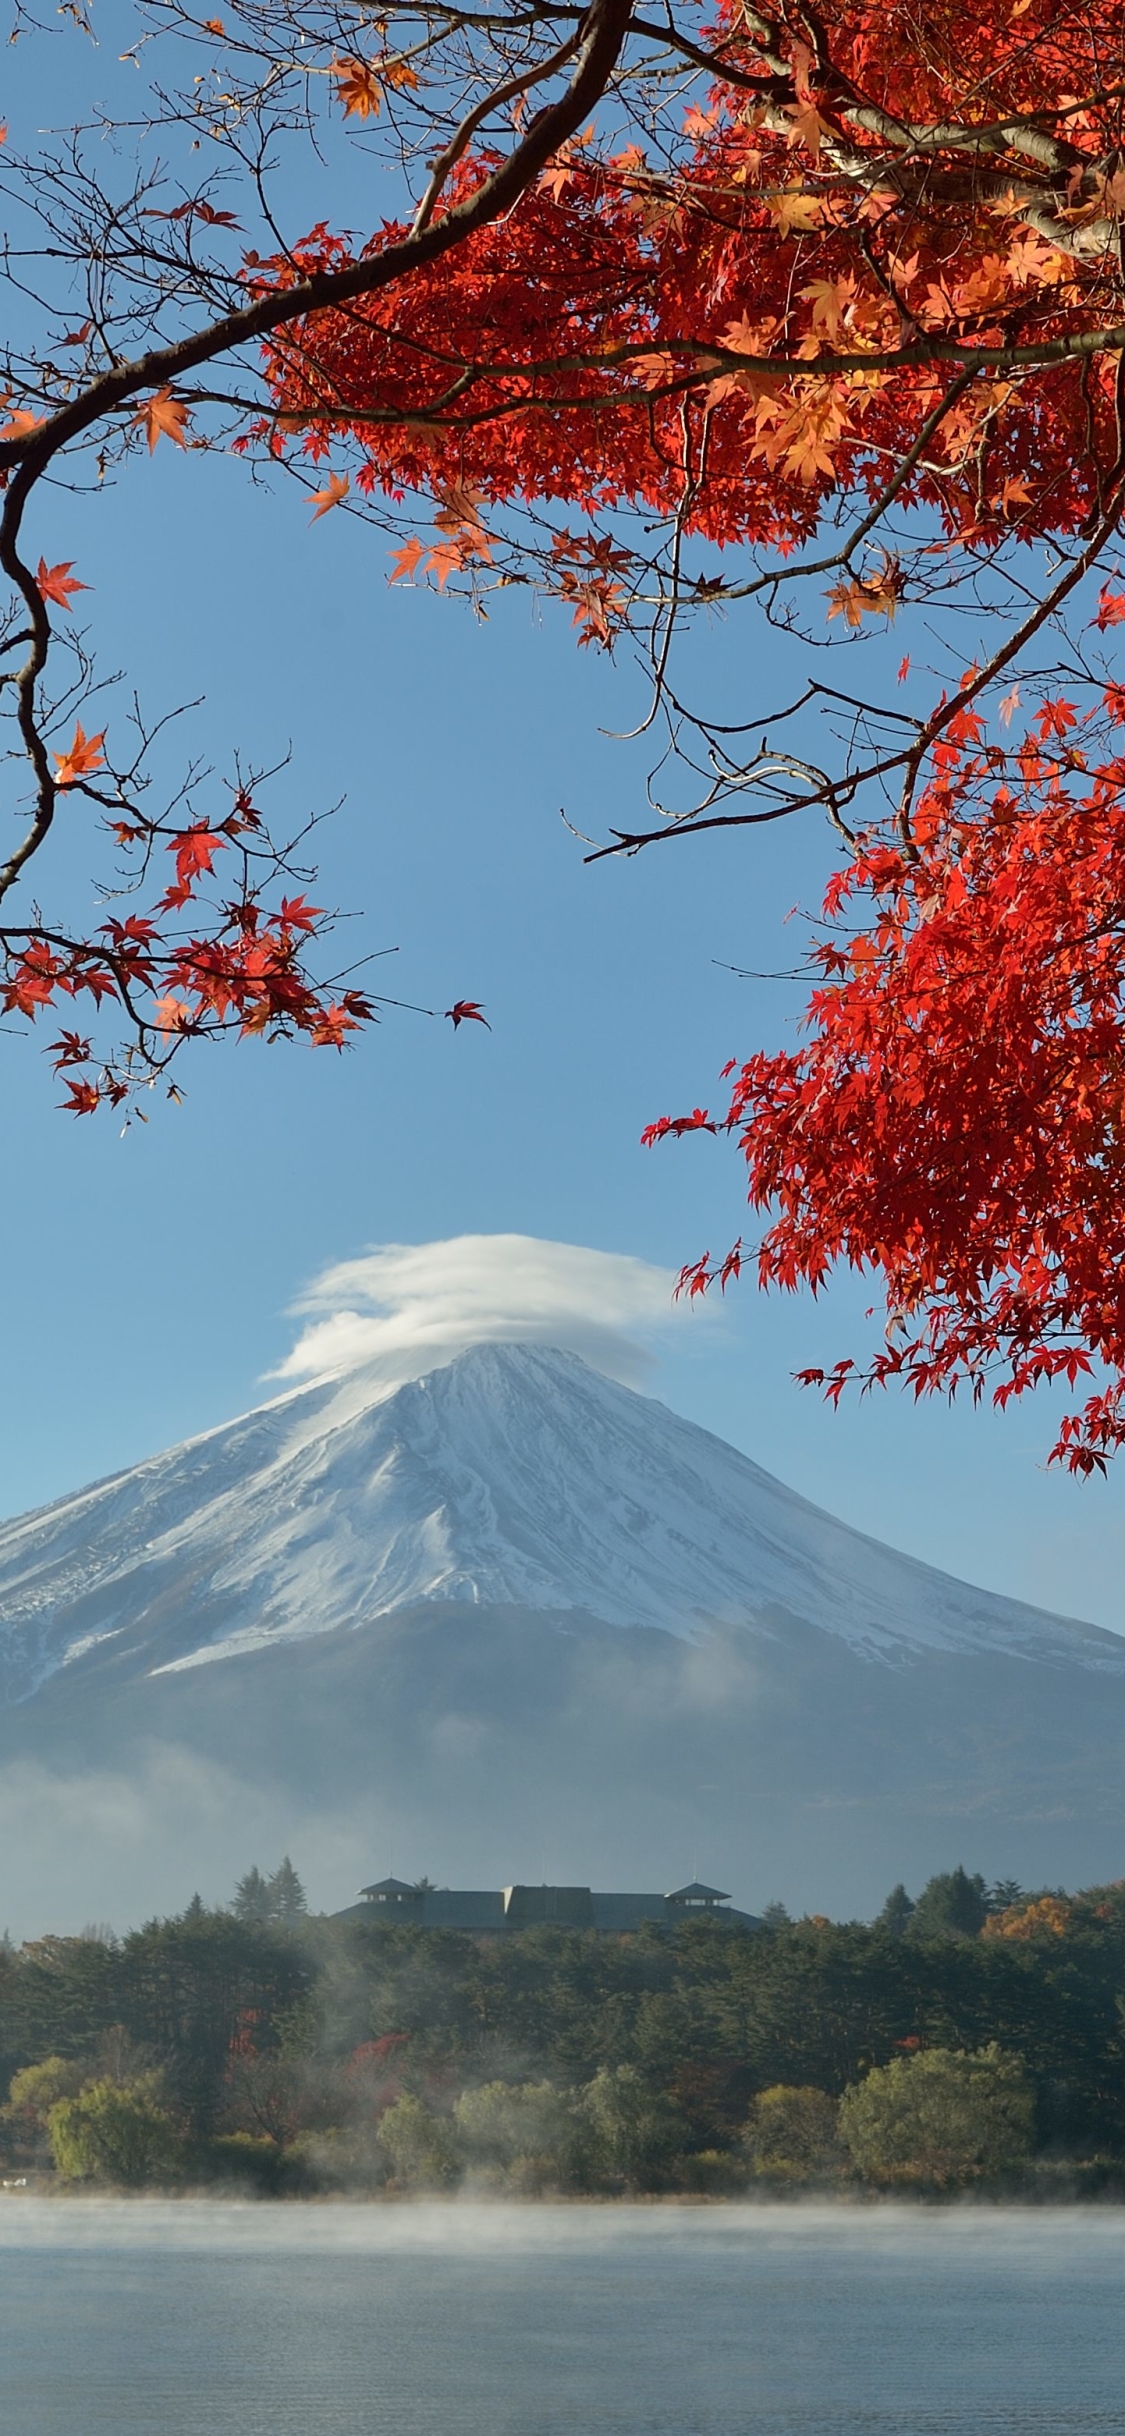 Скачать картинку Природа, Осень, Япония, Вулкан, Падать, Гора Фудзи, Вулканы, Земля/природа в телефон бесплатно.